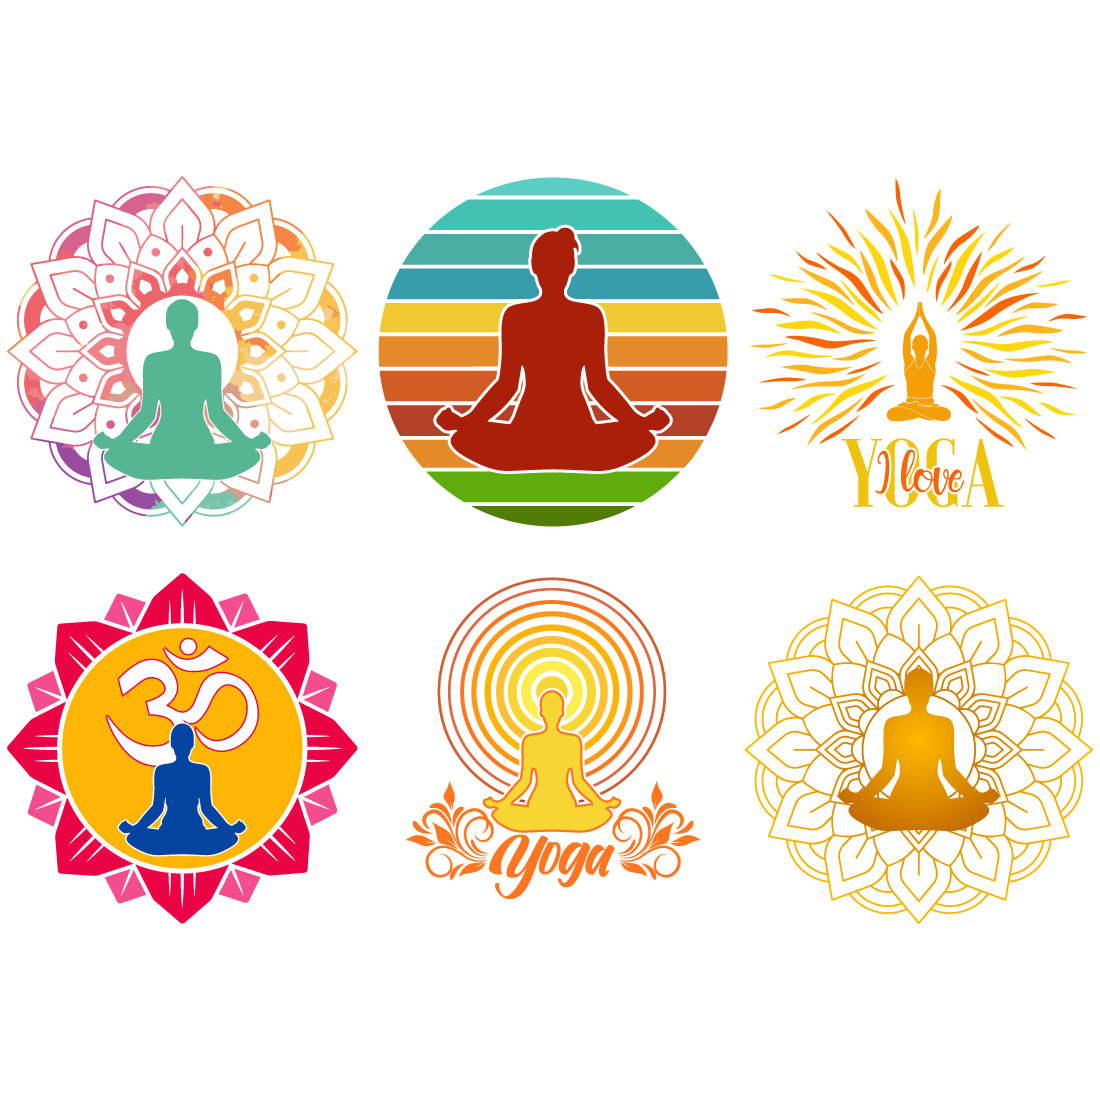 Yoga and Meditation Design Bundle cover image.